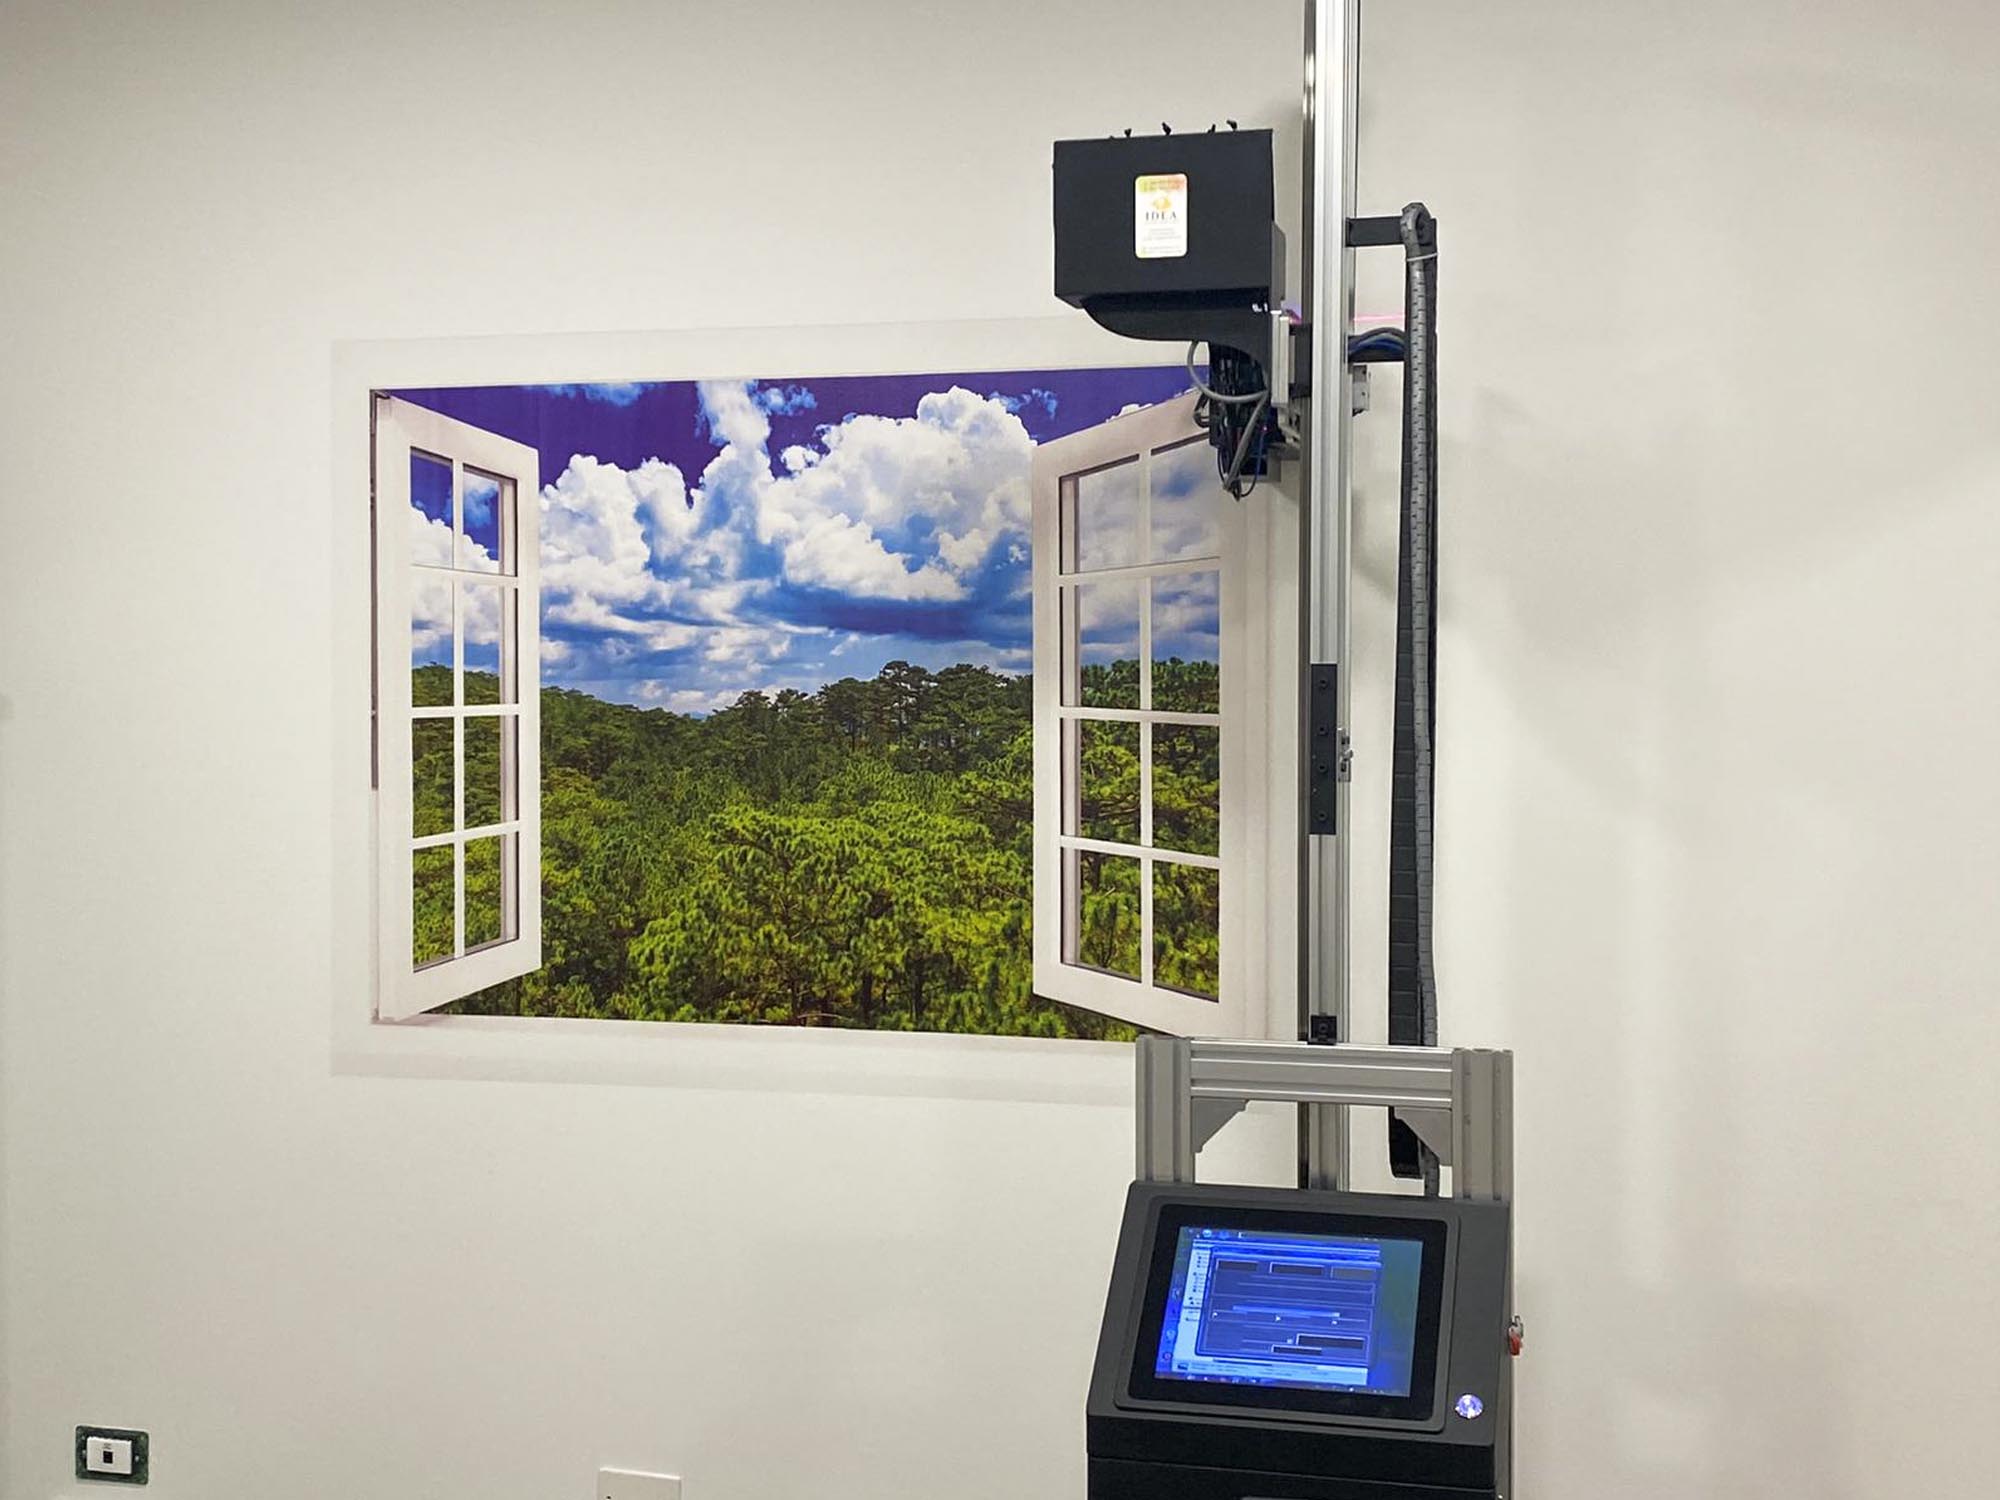 Wally la stampante da muro con la stampa di una finestra che si apre su un bosco e con sopra un cielo blu con nuvole bianche